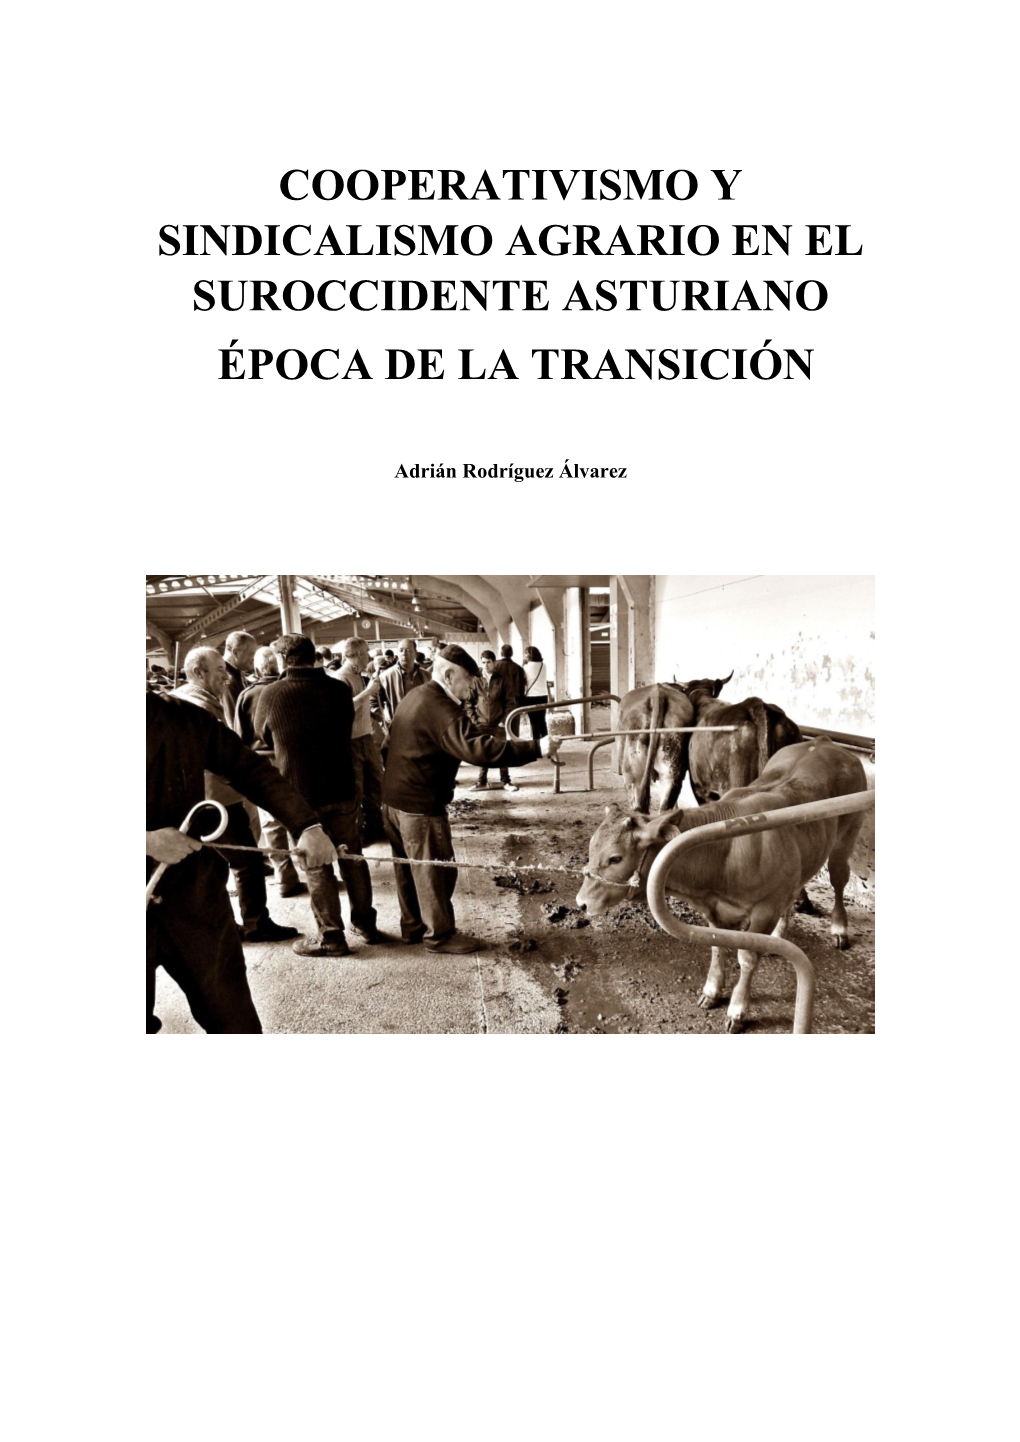 Cooperativismo Y Sindicalismo Agrario En El Suroccidente Asturiano Época De La Transición